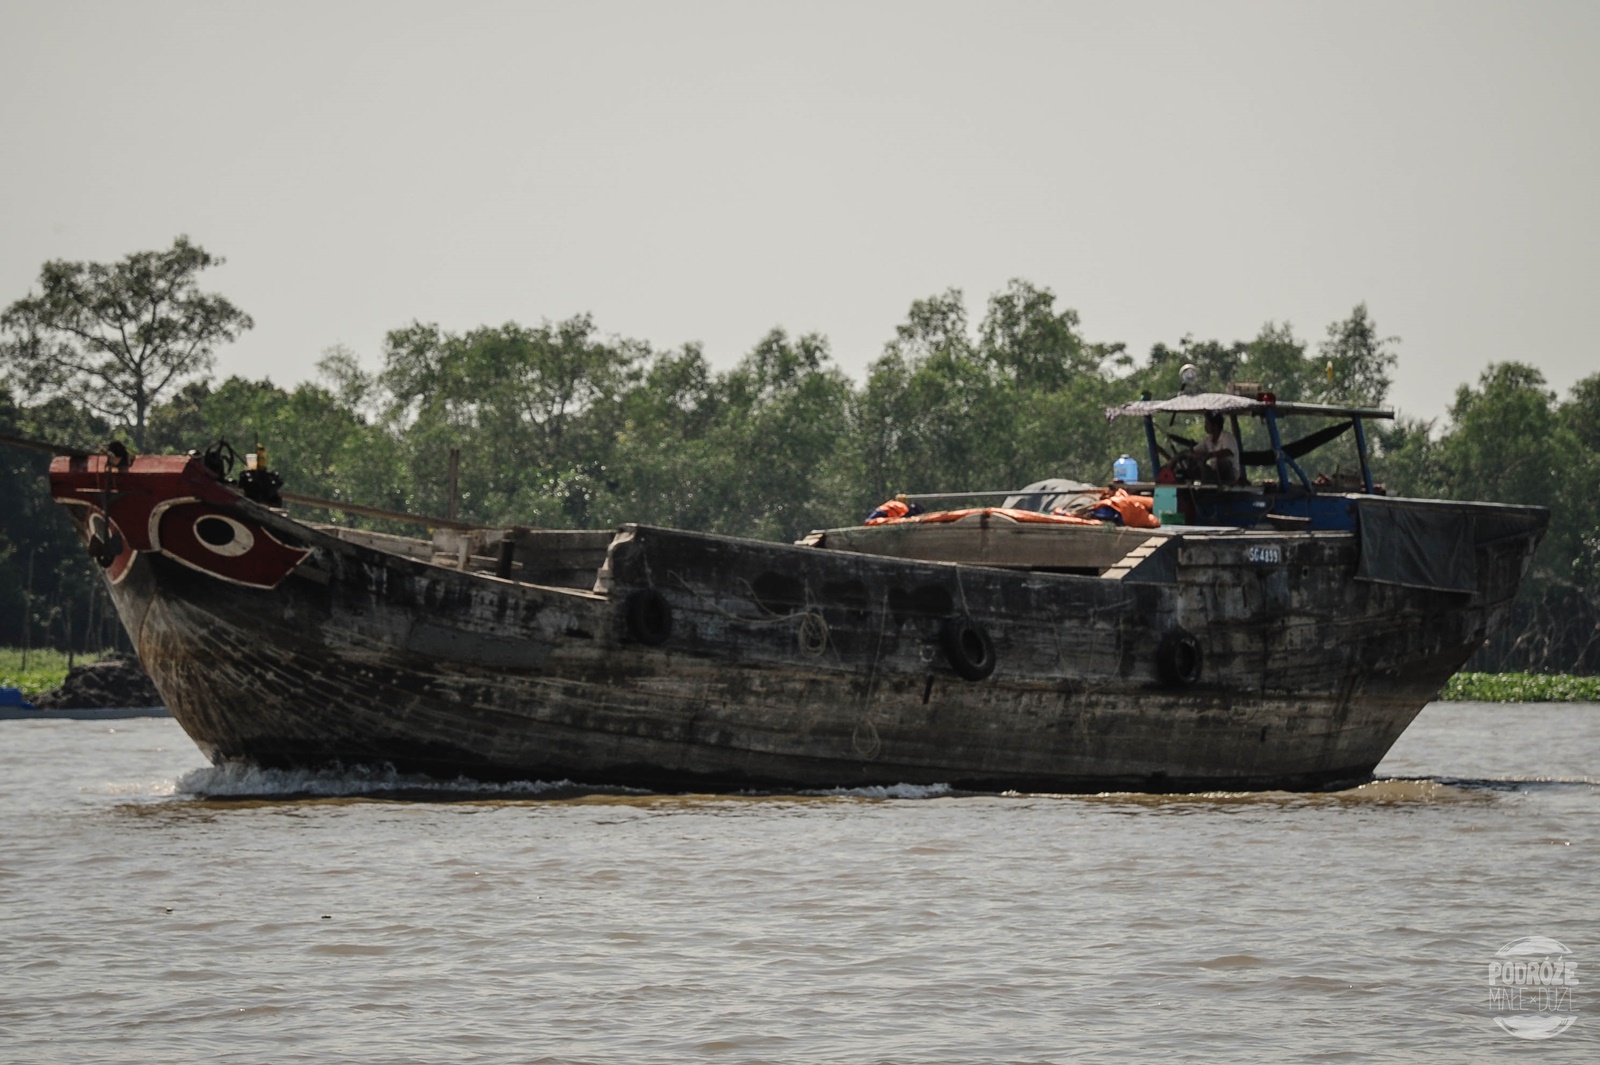 wycieczka delta mekongu